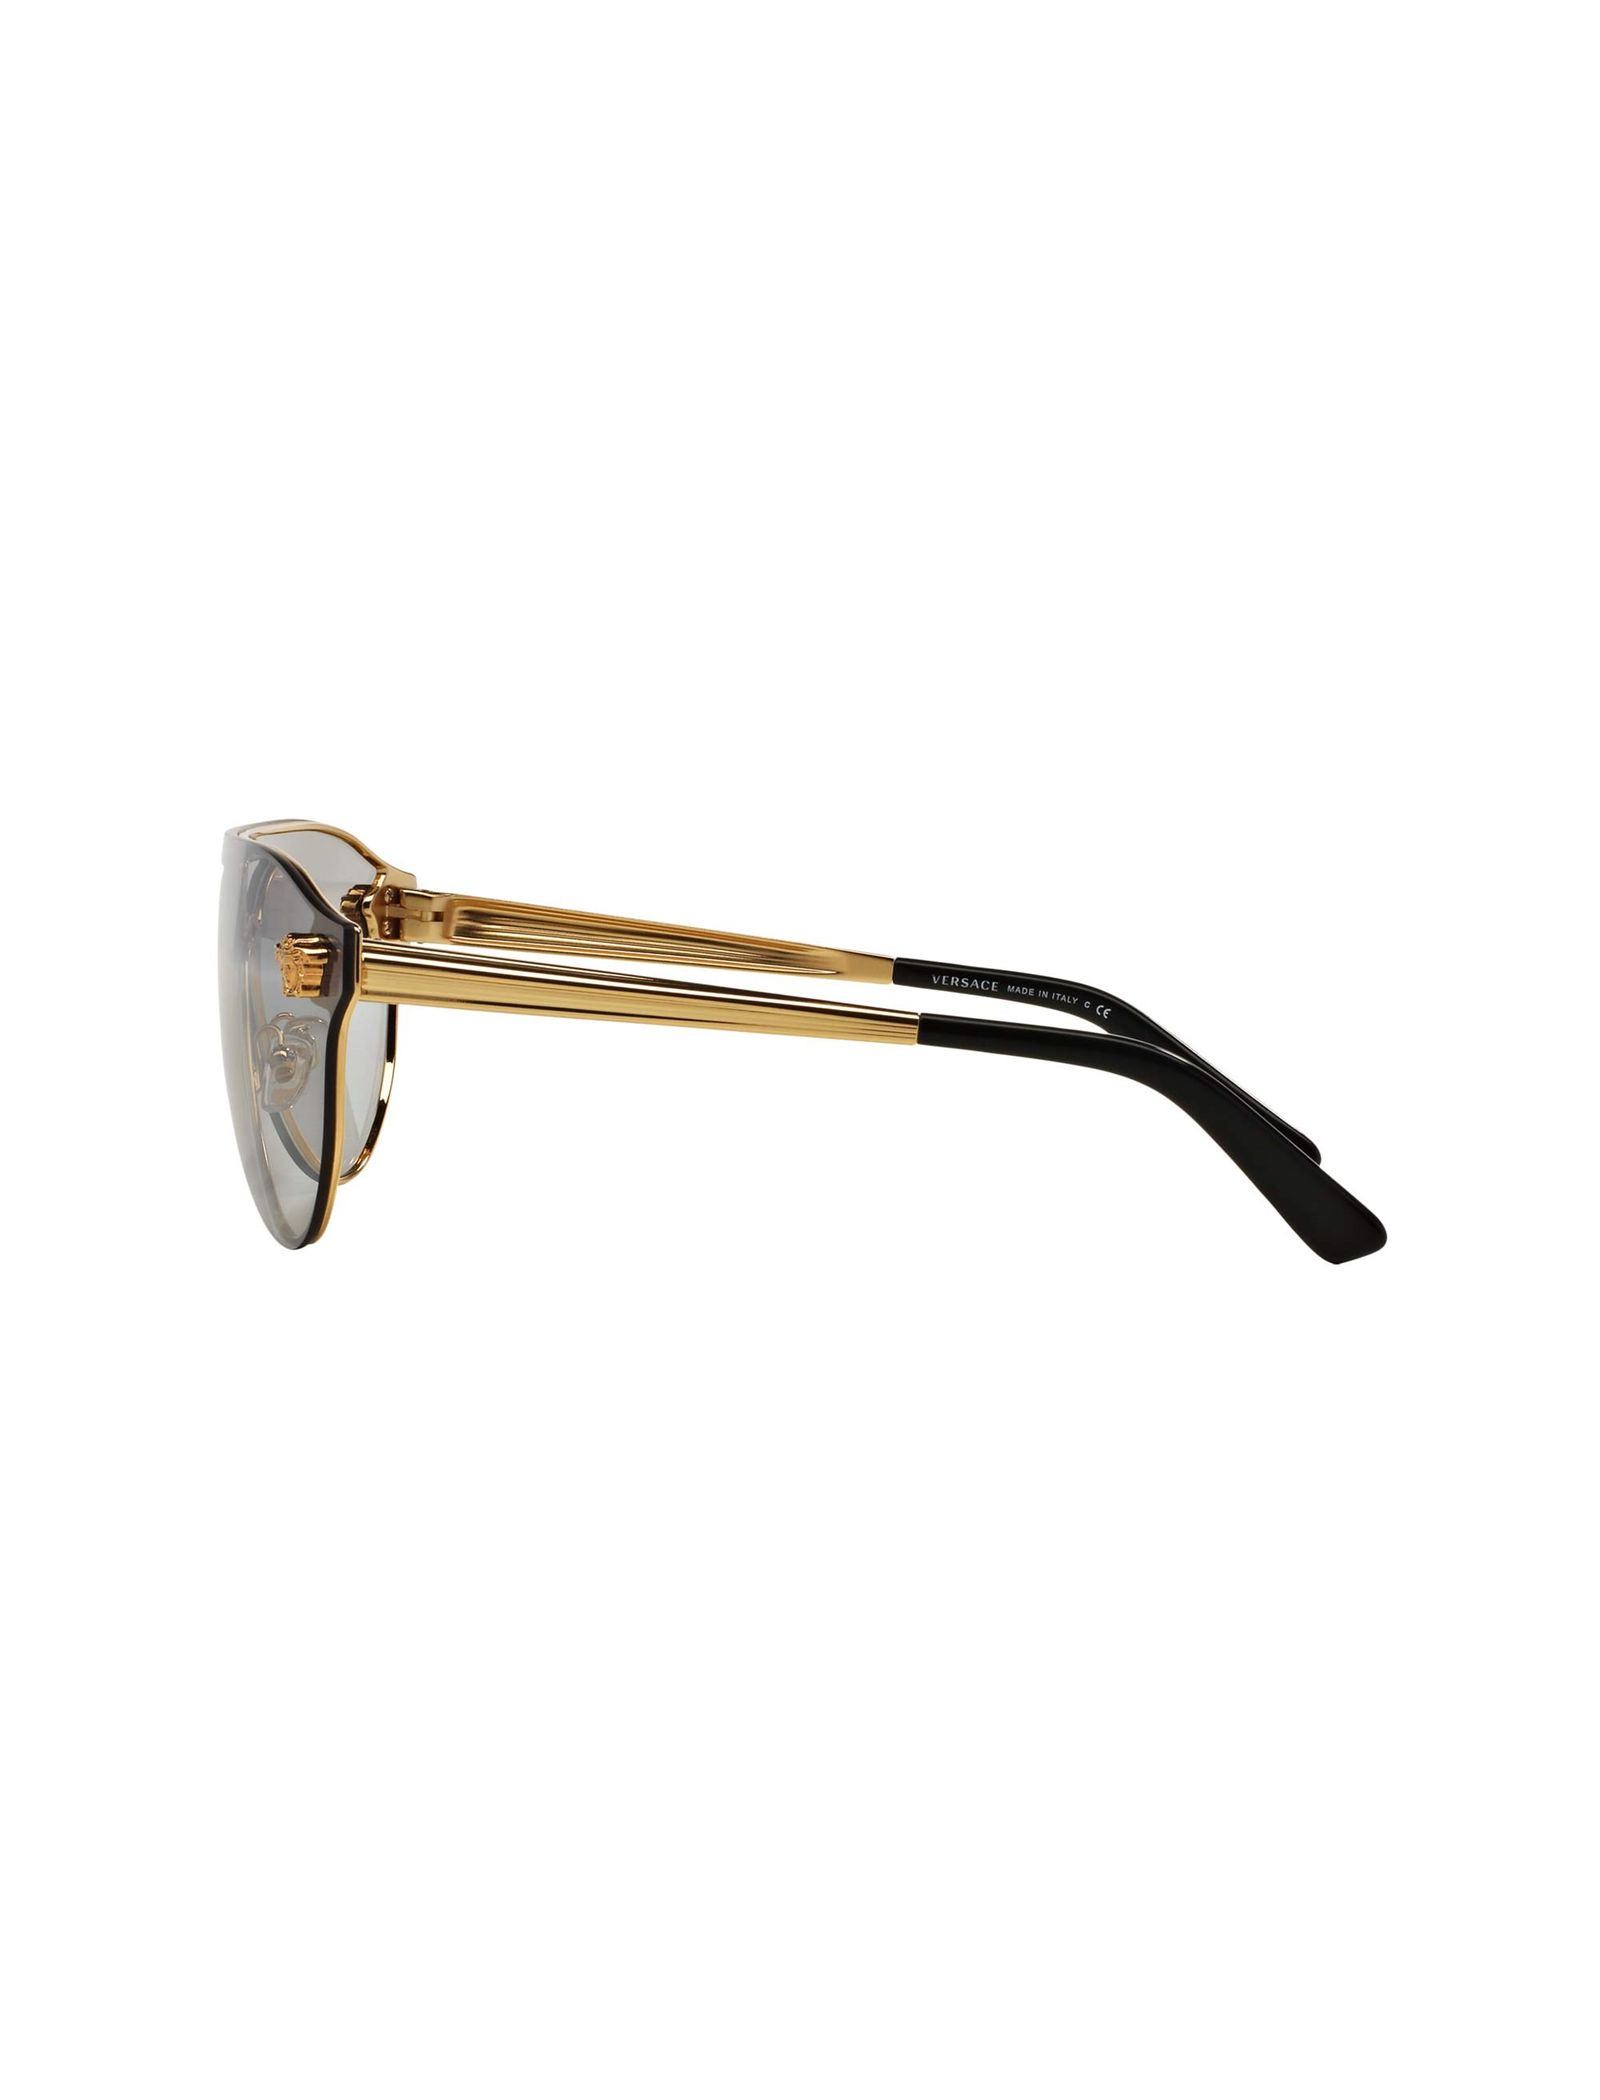 عینک آفتابی خلبانی زنانه - ورساچه - طلايي - 7